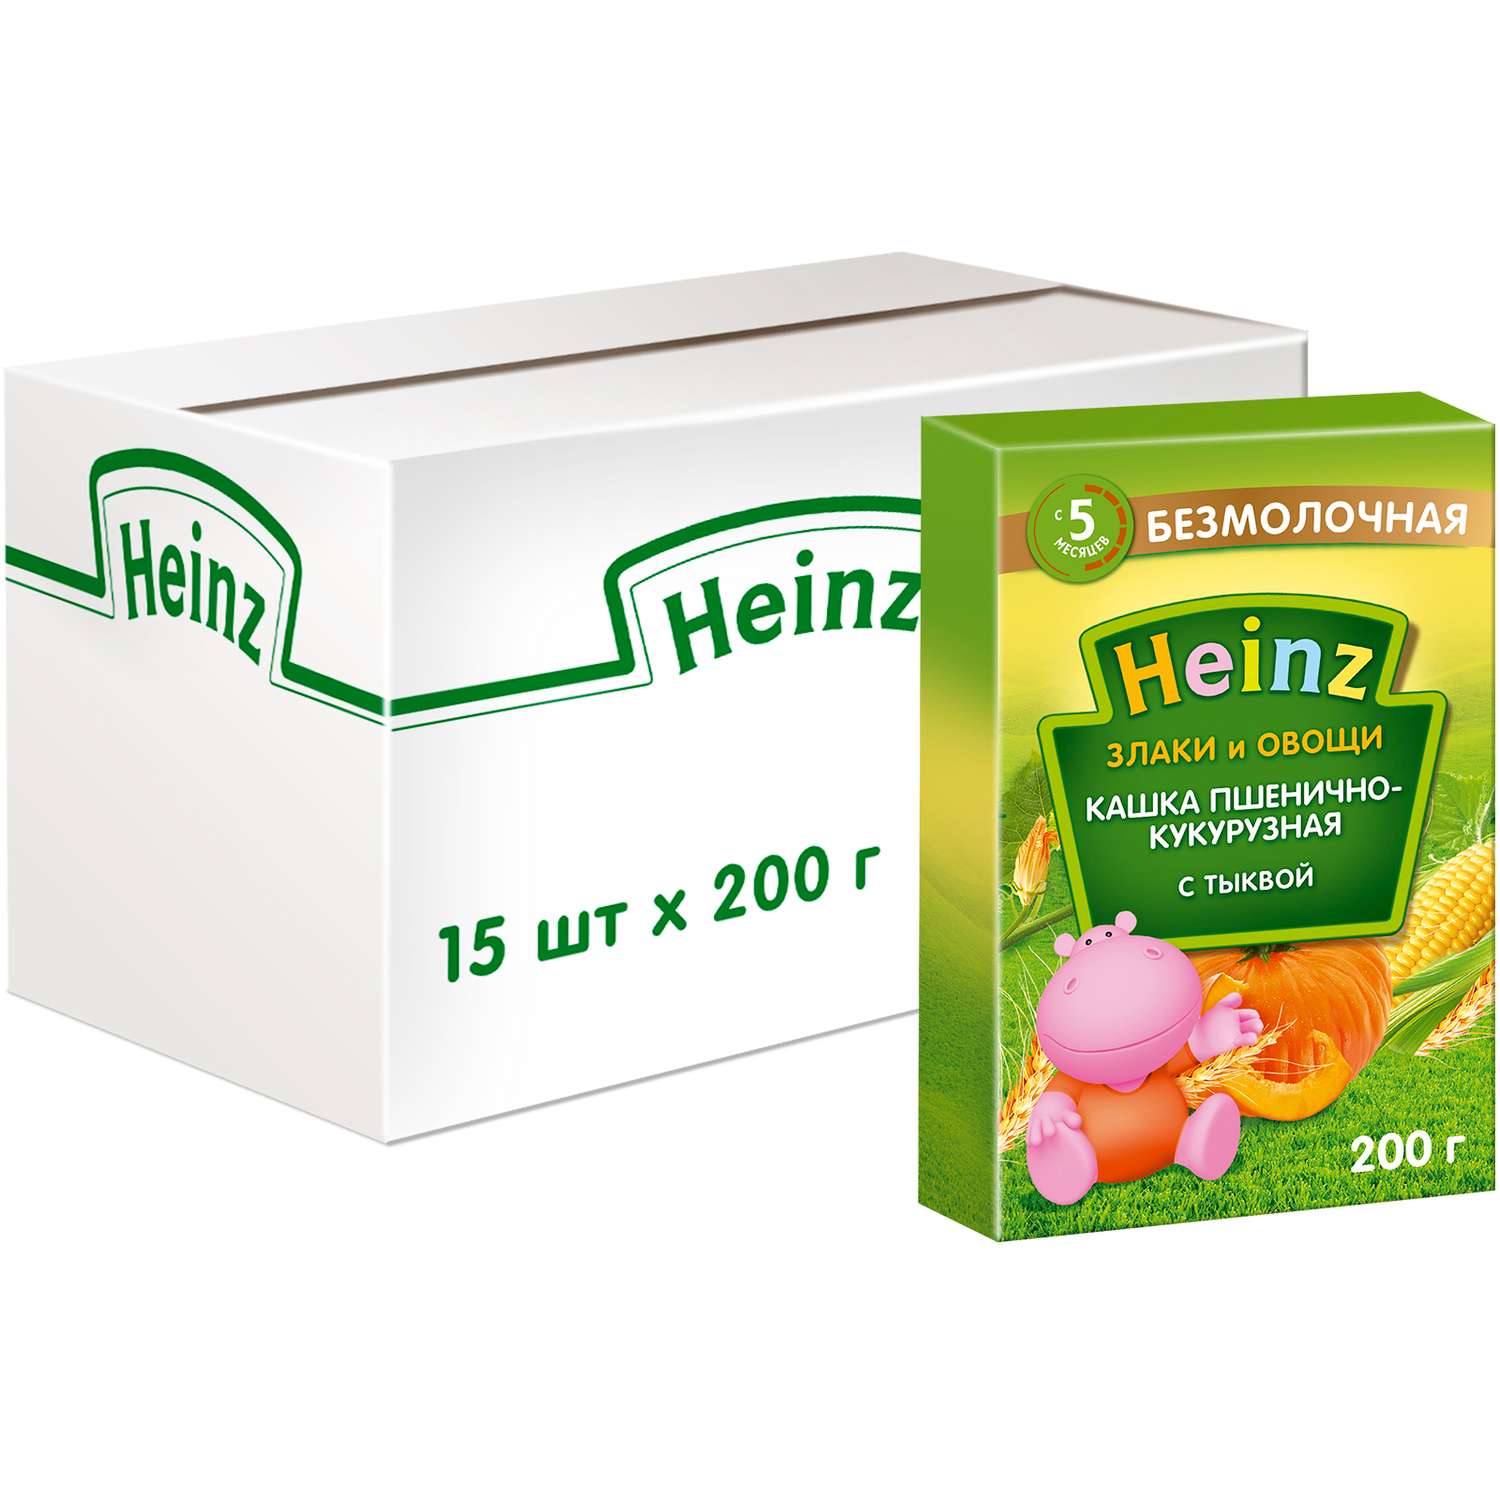 Каша Heinz безмолочная пшенично-кукурузная с тыквой 200г с 5месяцев - фото 6